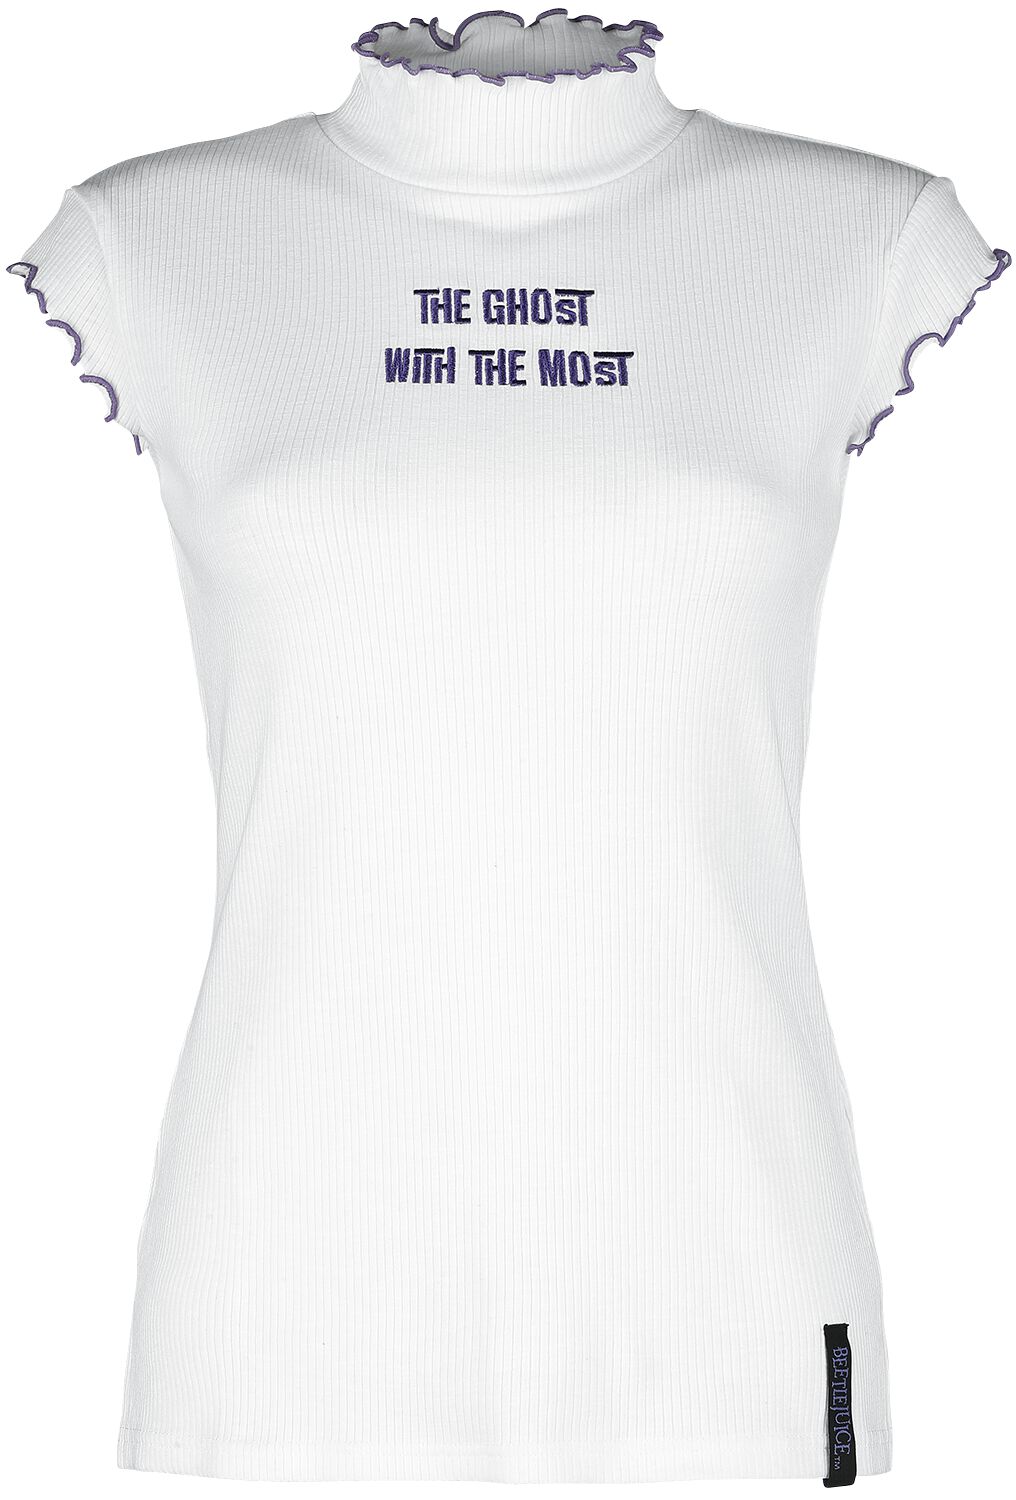 Beetlejuice T-Shirt - Ghost With The Most - XS bis XXL - für Damen - Größe S - weiß  - EMP exklusives Merchandise!